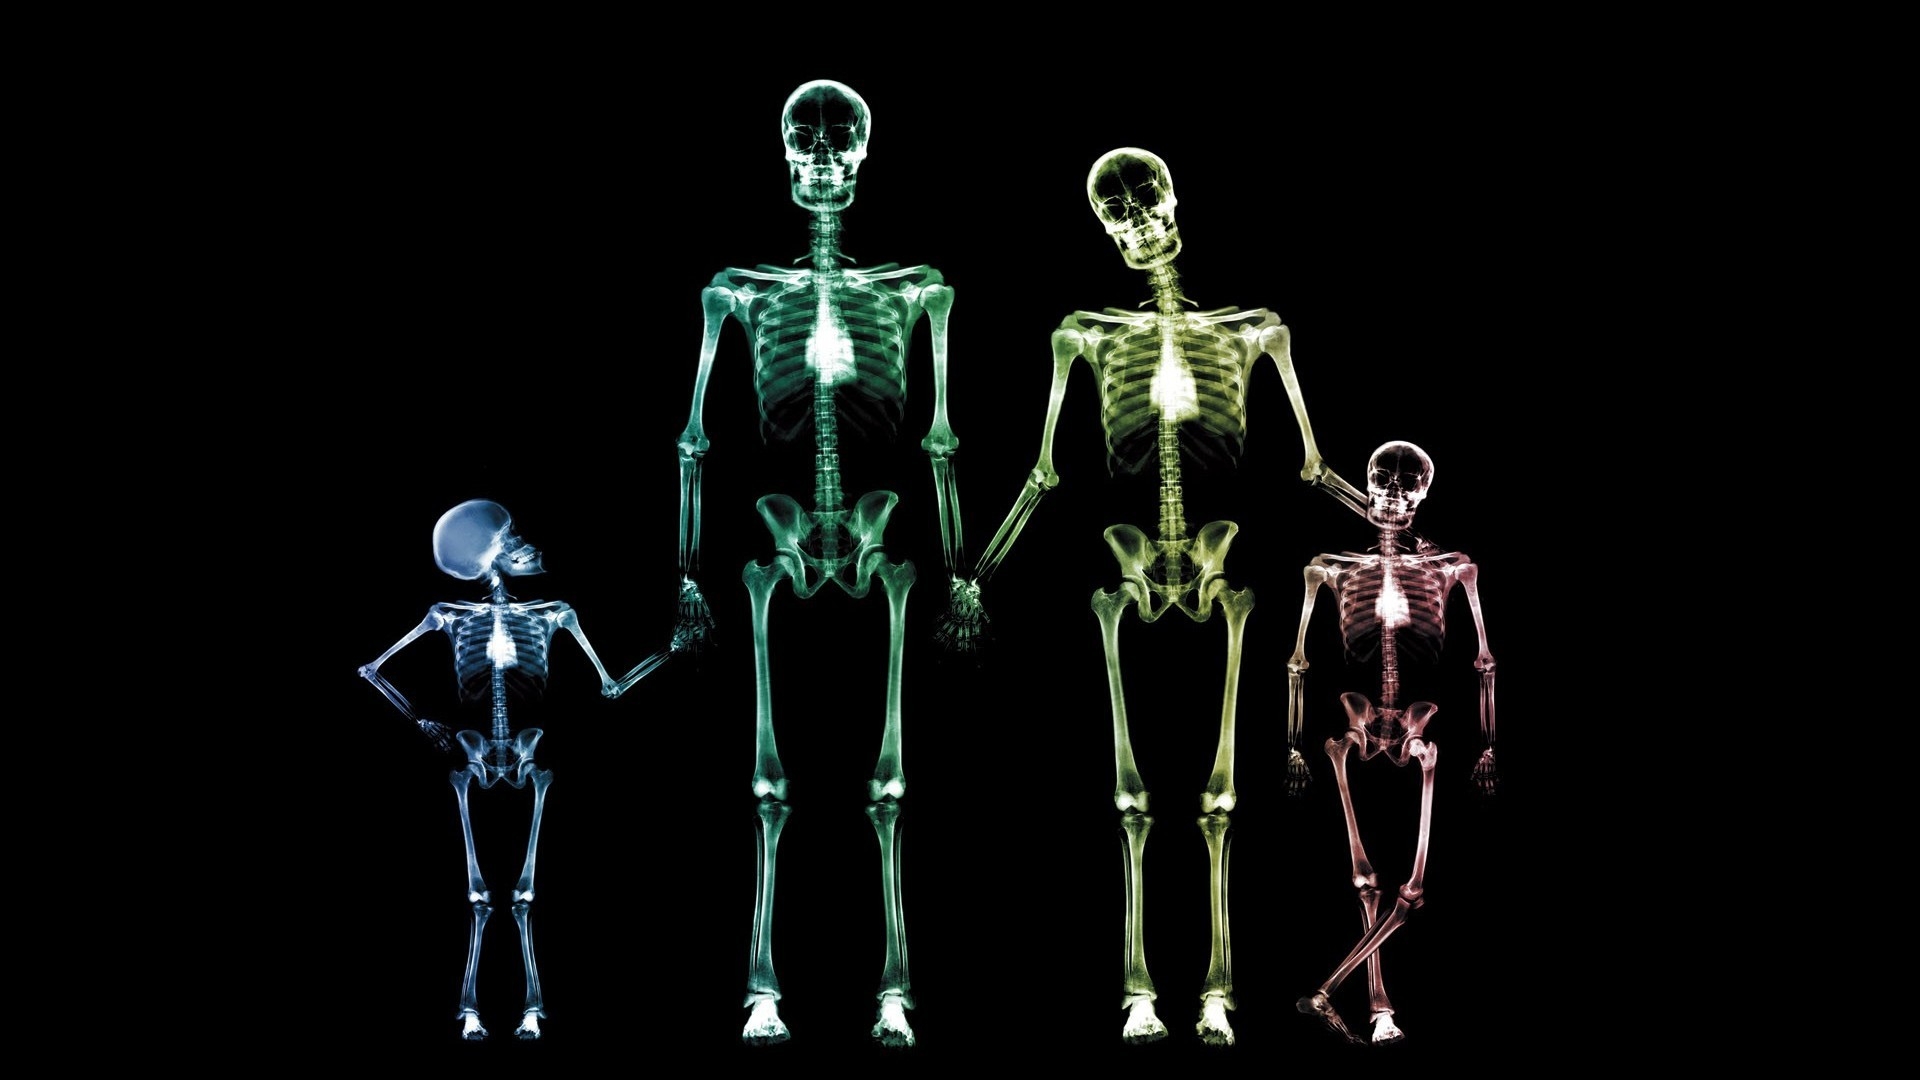 Family Skeletons for 1920 x 1080 HDTV 1080p resolution